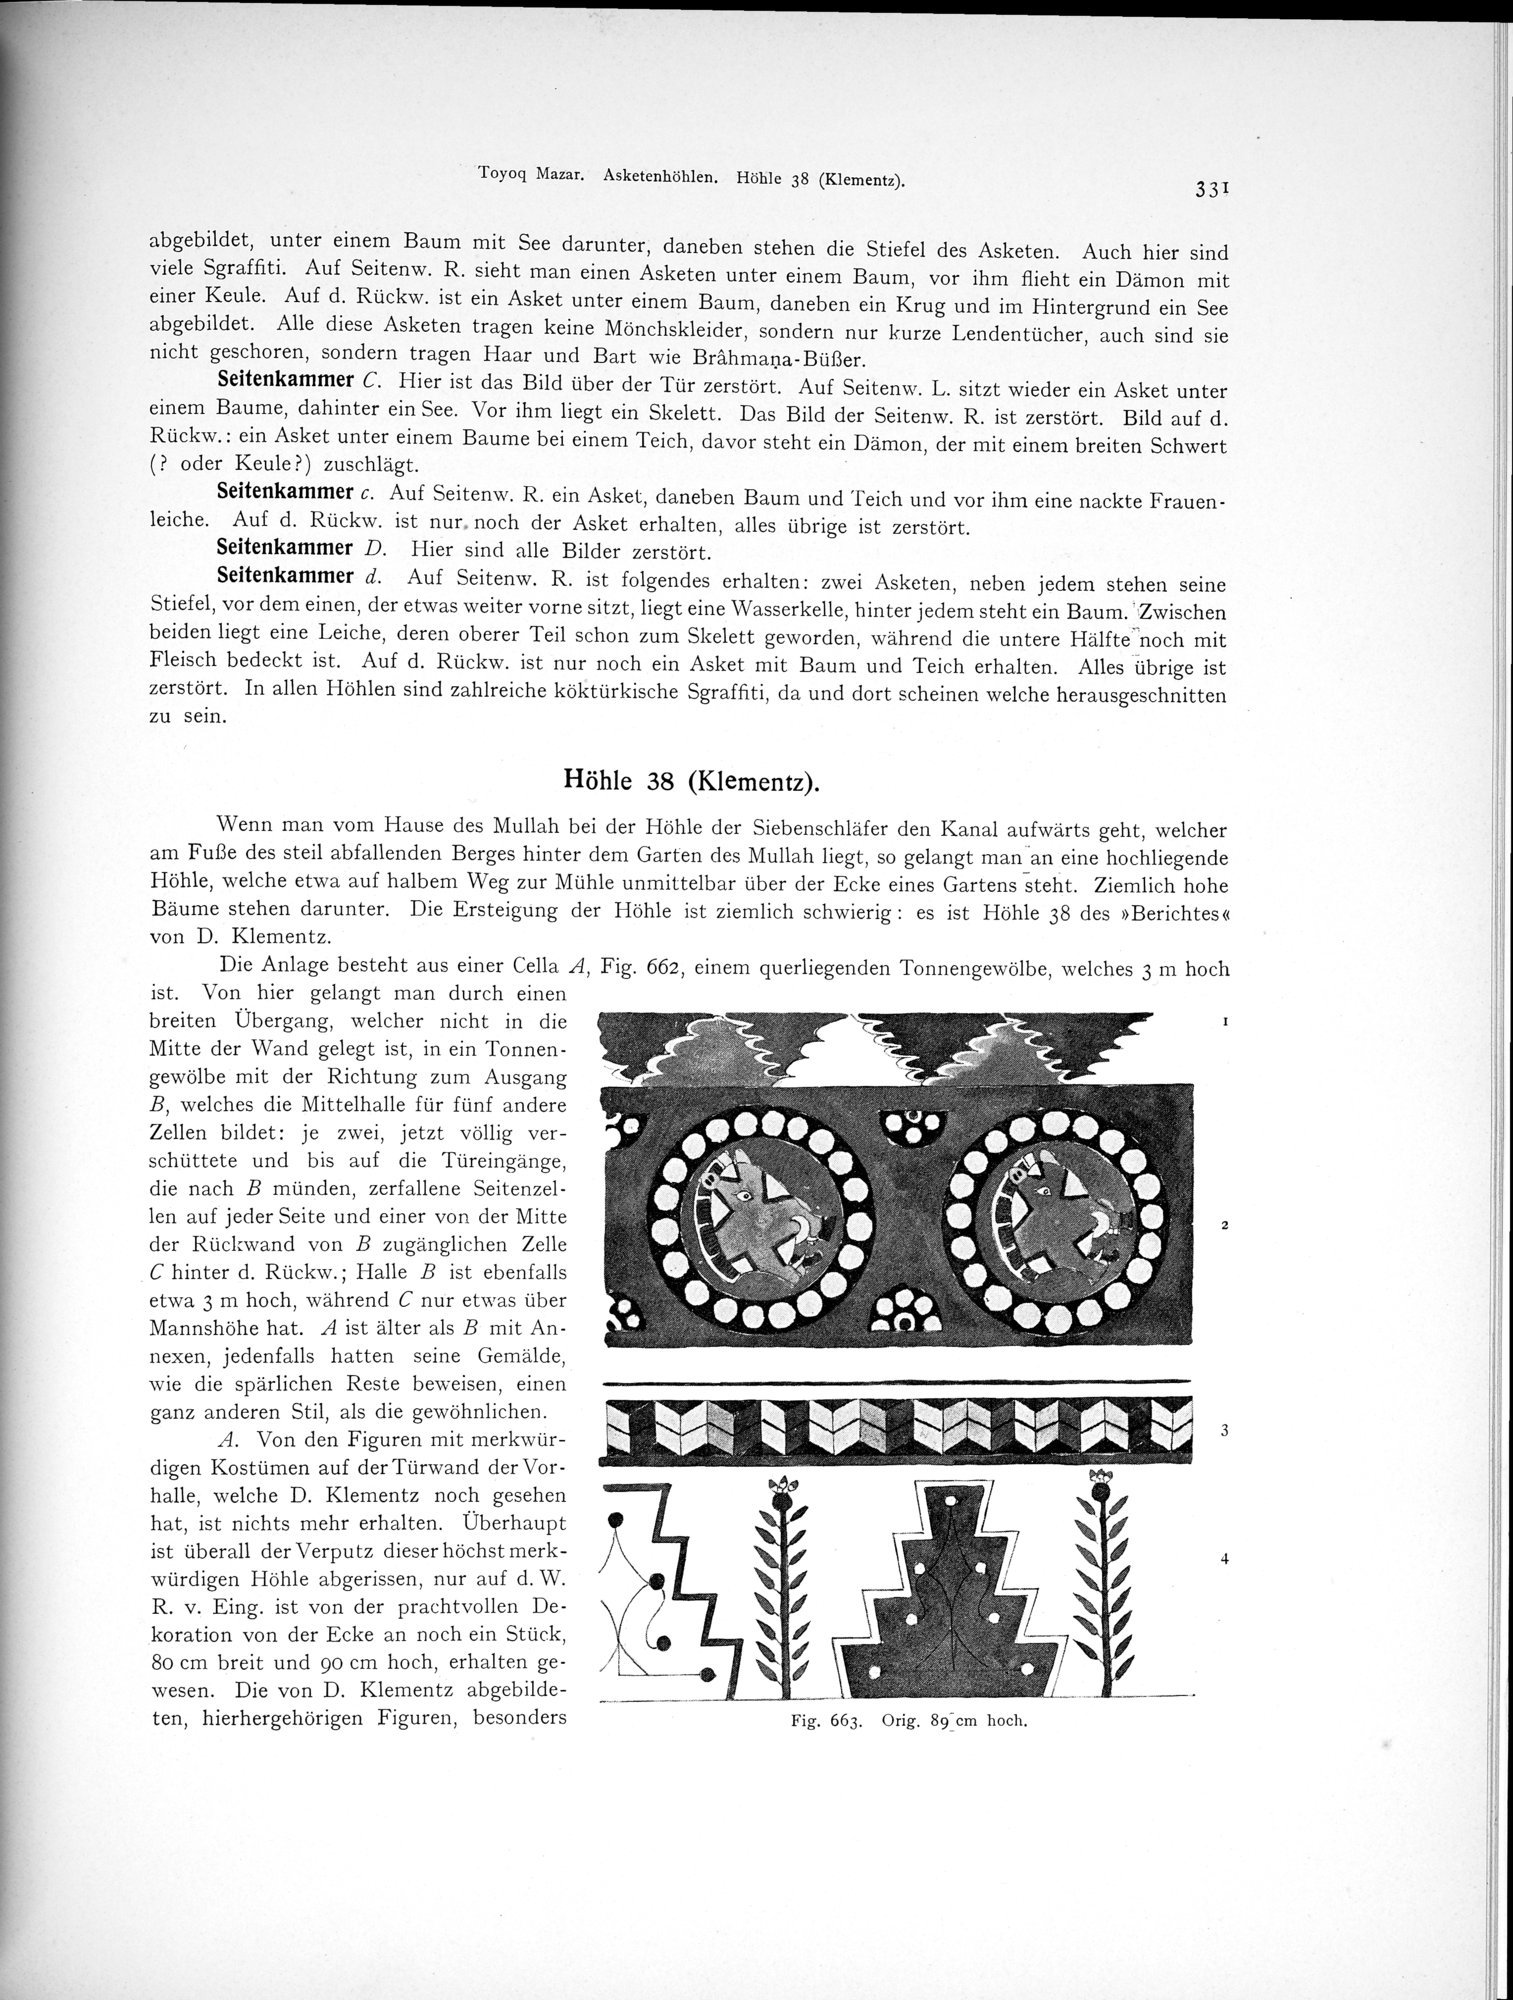 Altbuddhistische Kultstätten in Chinesisch-Turkistan : vol.1 / Page 337 (Grayscale High Resolution Image)